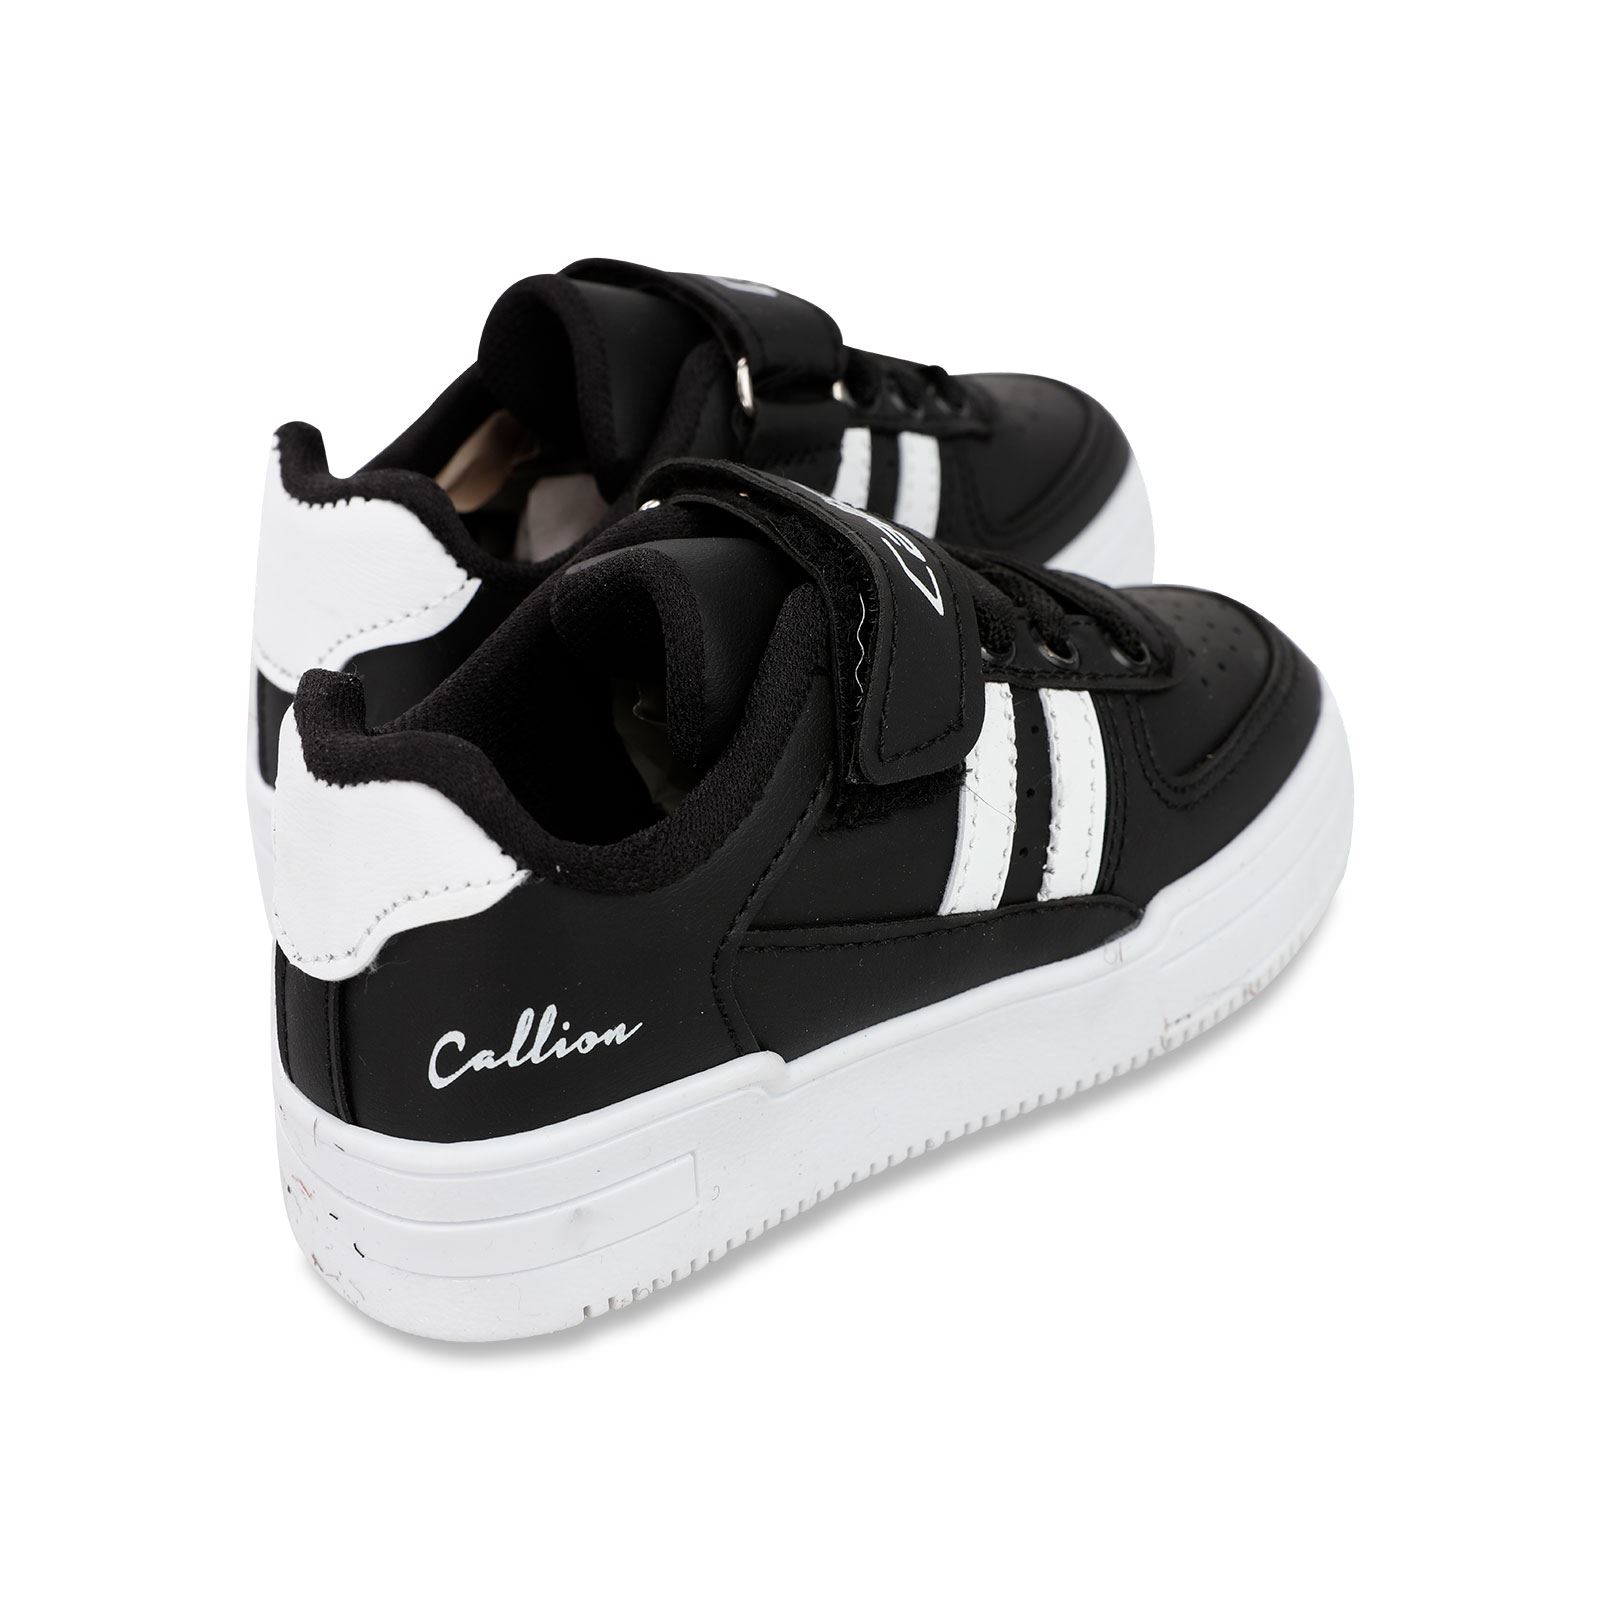 Callion Erkek Çocuk Spor Ayakkabı 26-30 Numara Siyah